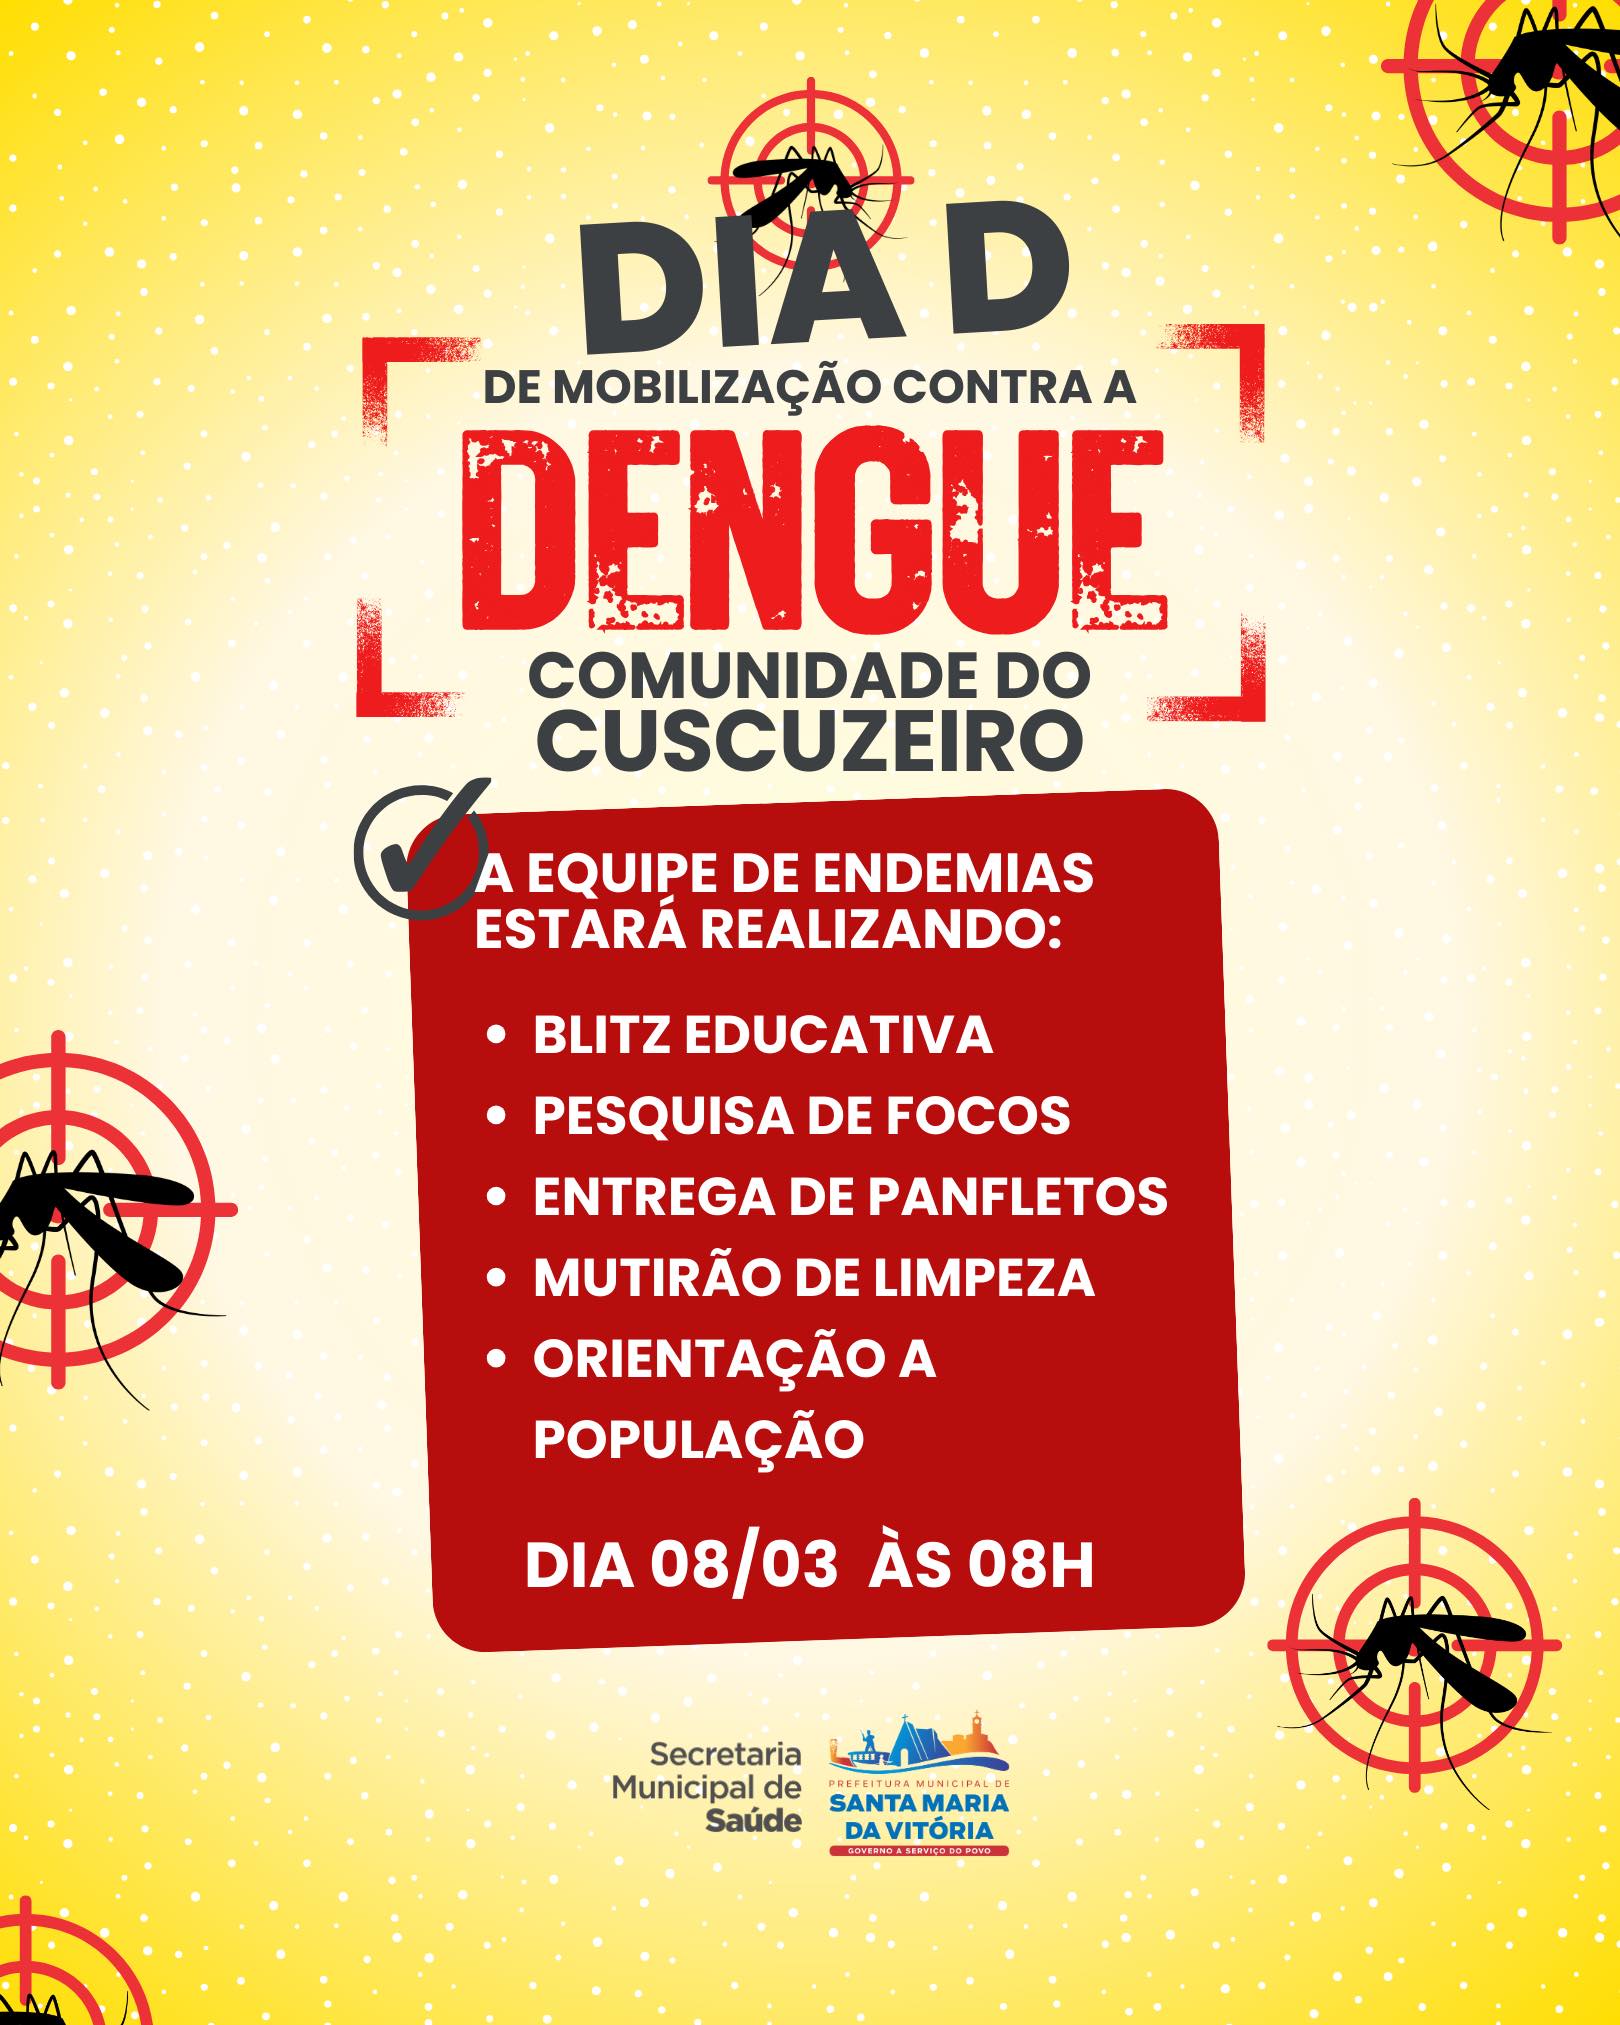 Nesta sexta-feira (08), realizaremos o Dia D de Combate à Dengue na comunidade do Cuscuzeiro